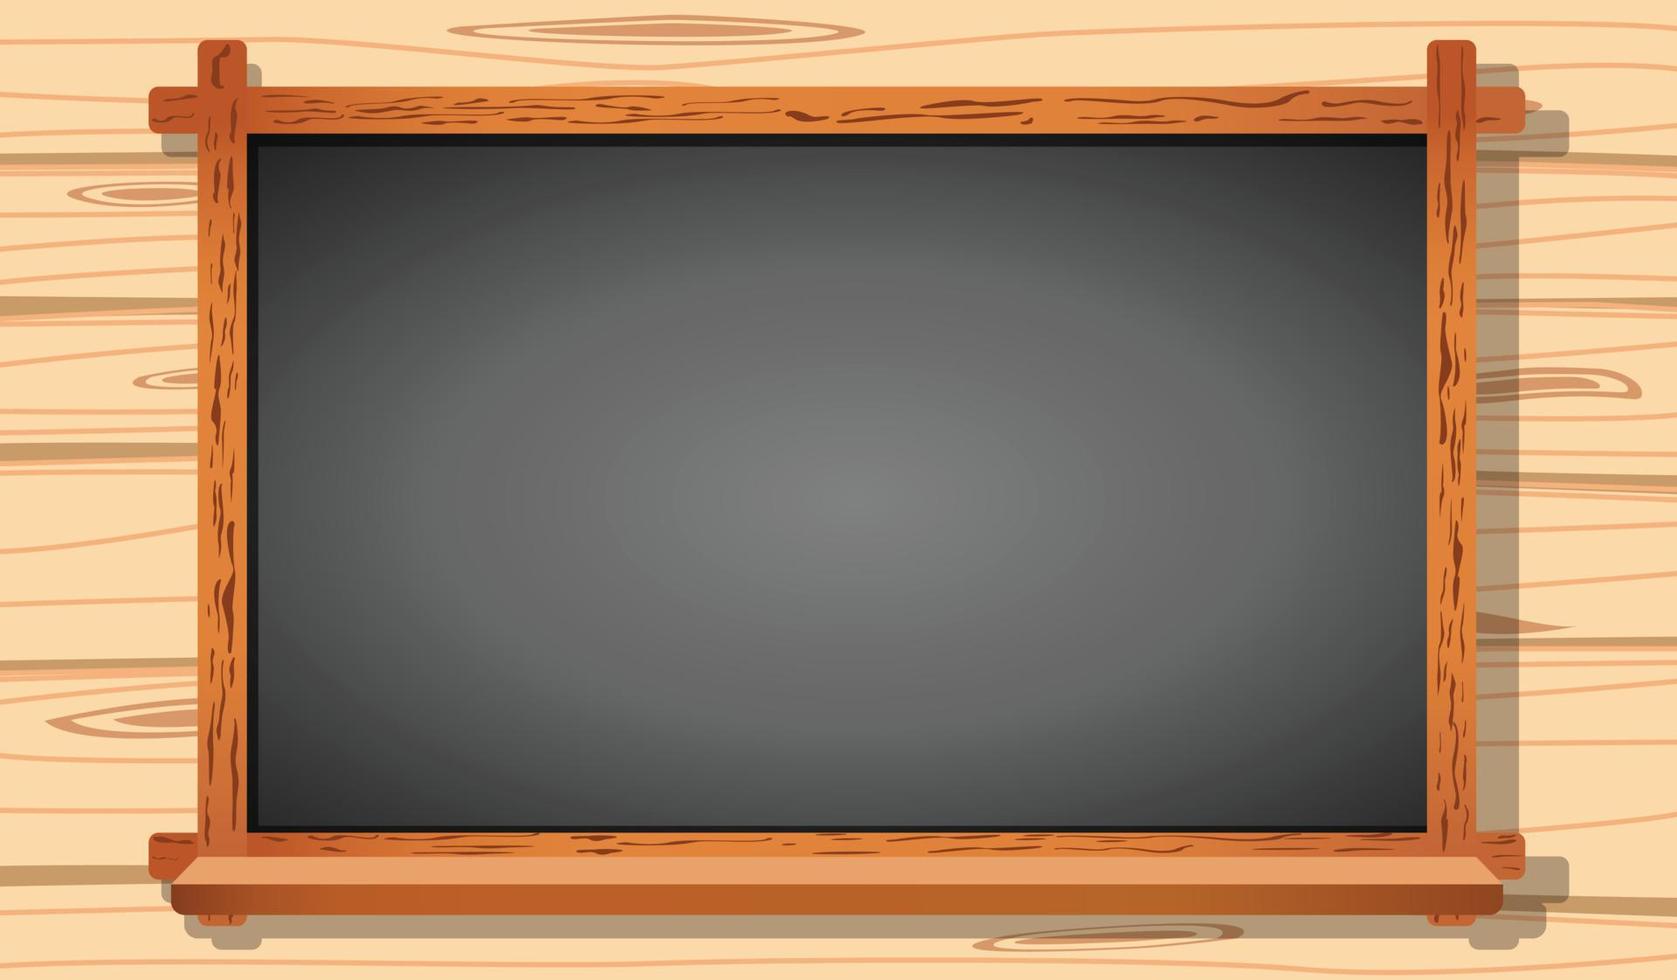 Blackboard on wooden sheet wall background. chalkboard for copy space. blank blackboard vector illustration